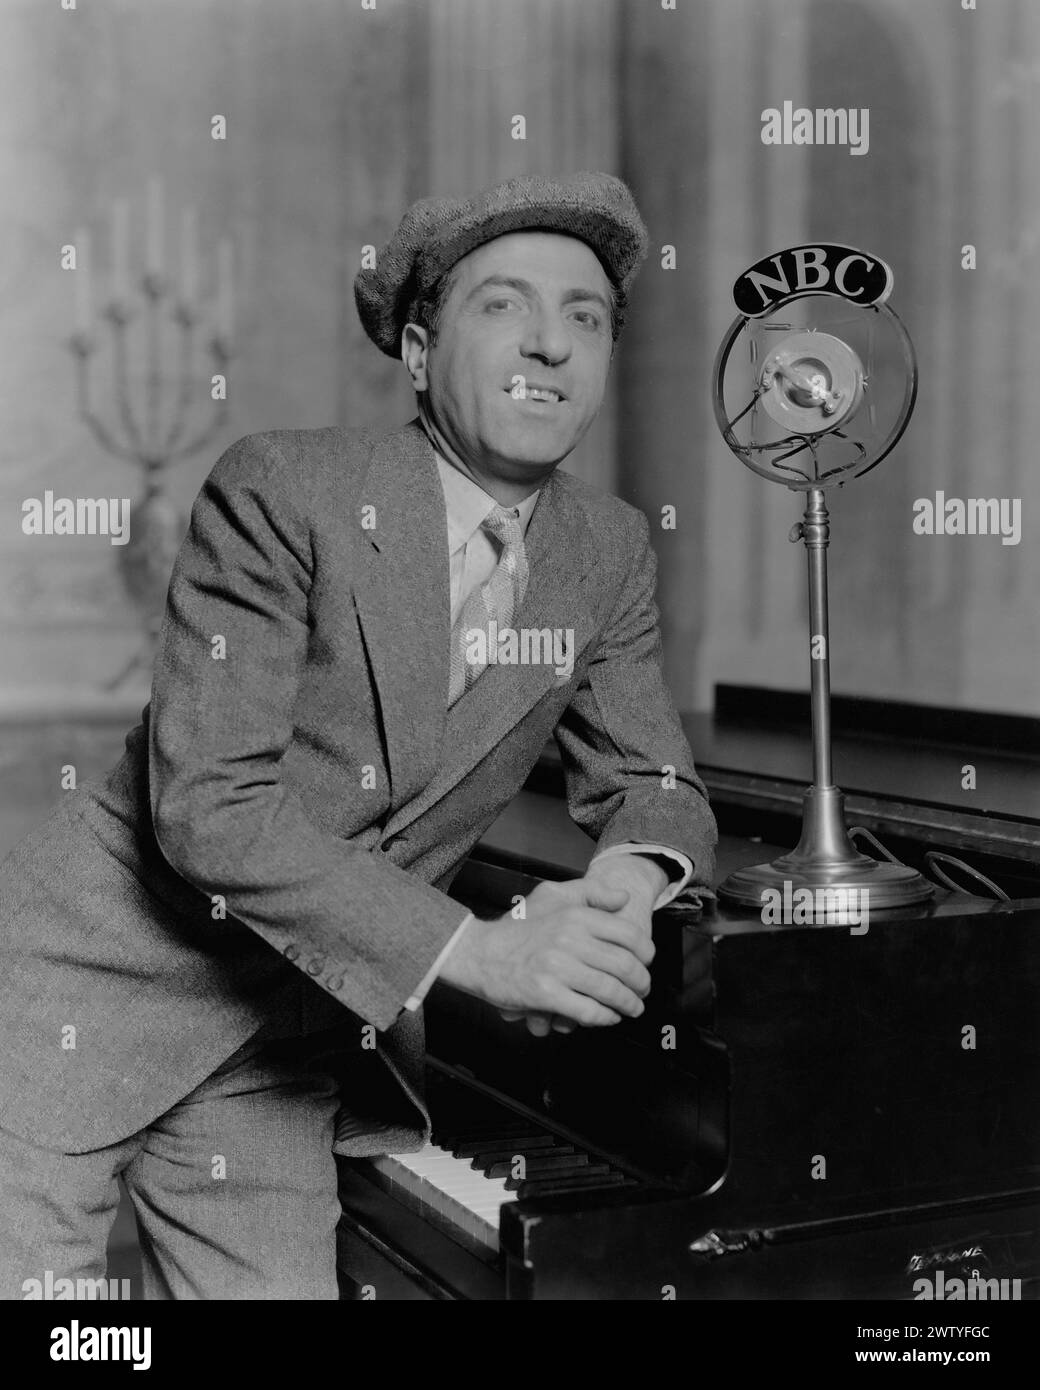 Musicien Ted Lewis dans un costume d'affaires et un chapeau appuyé sur un piano avec un microphone NBC à côté de lui Banque D'Images